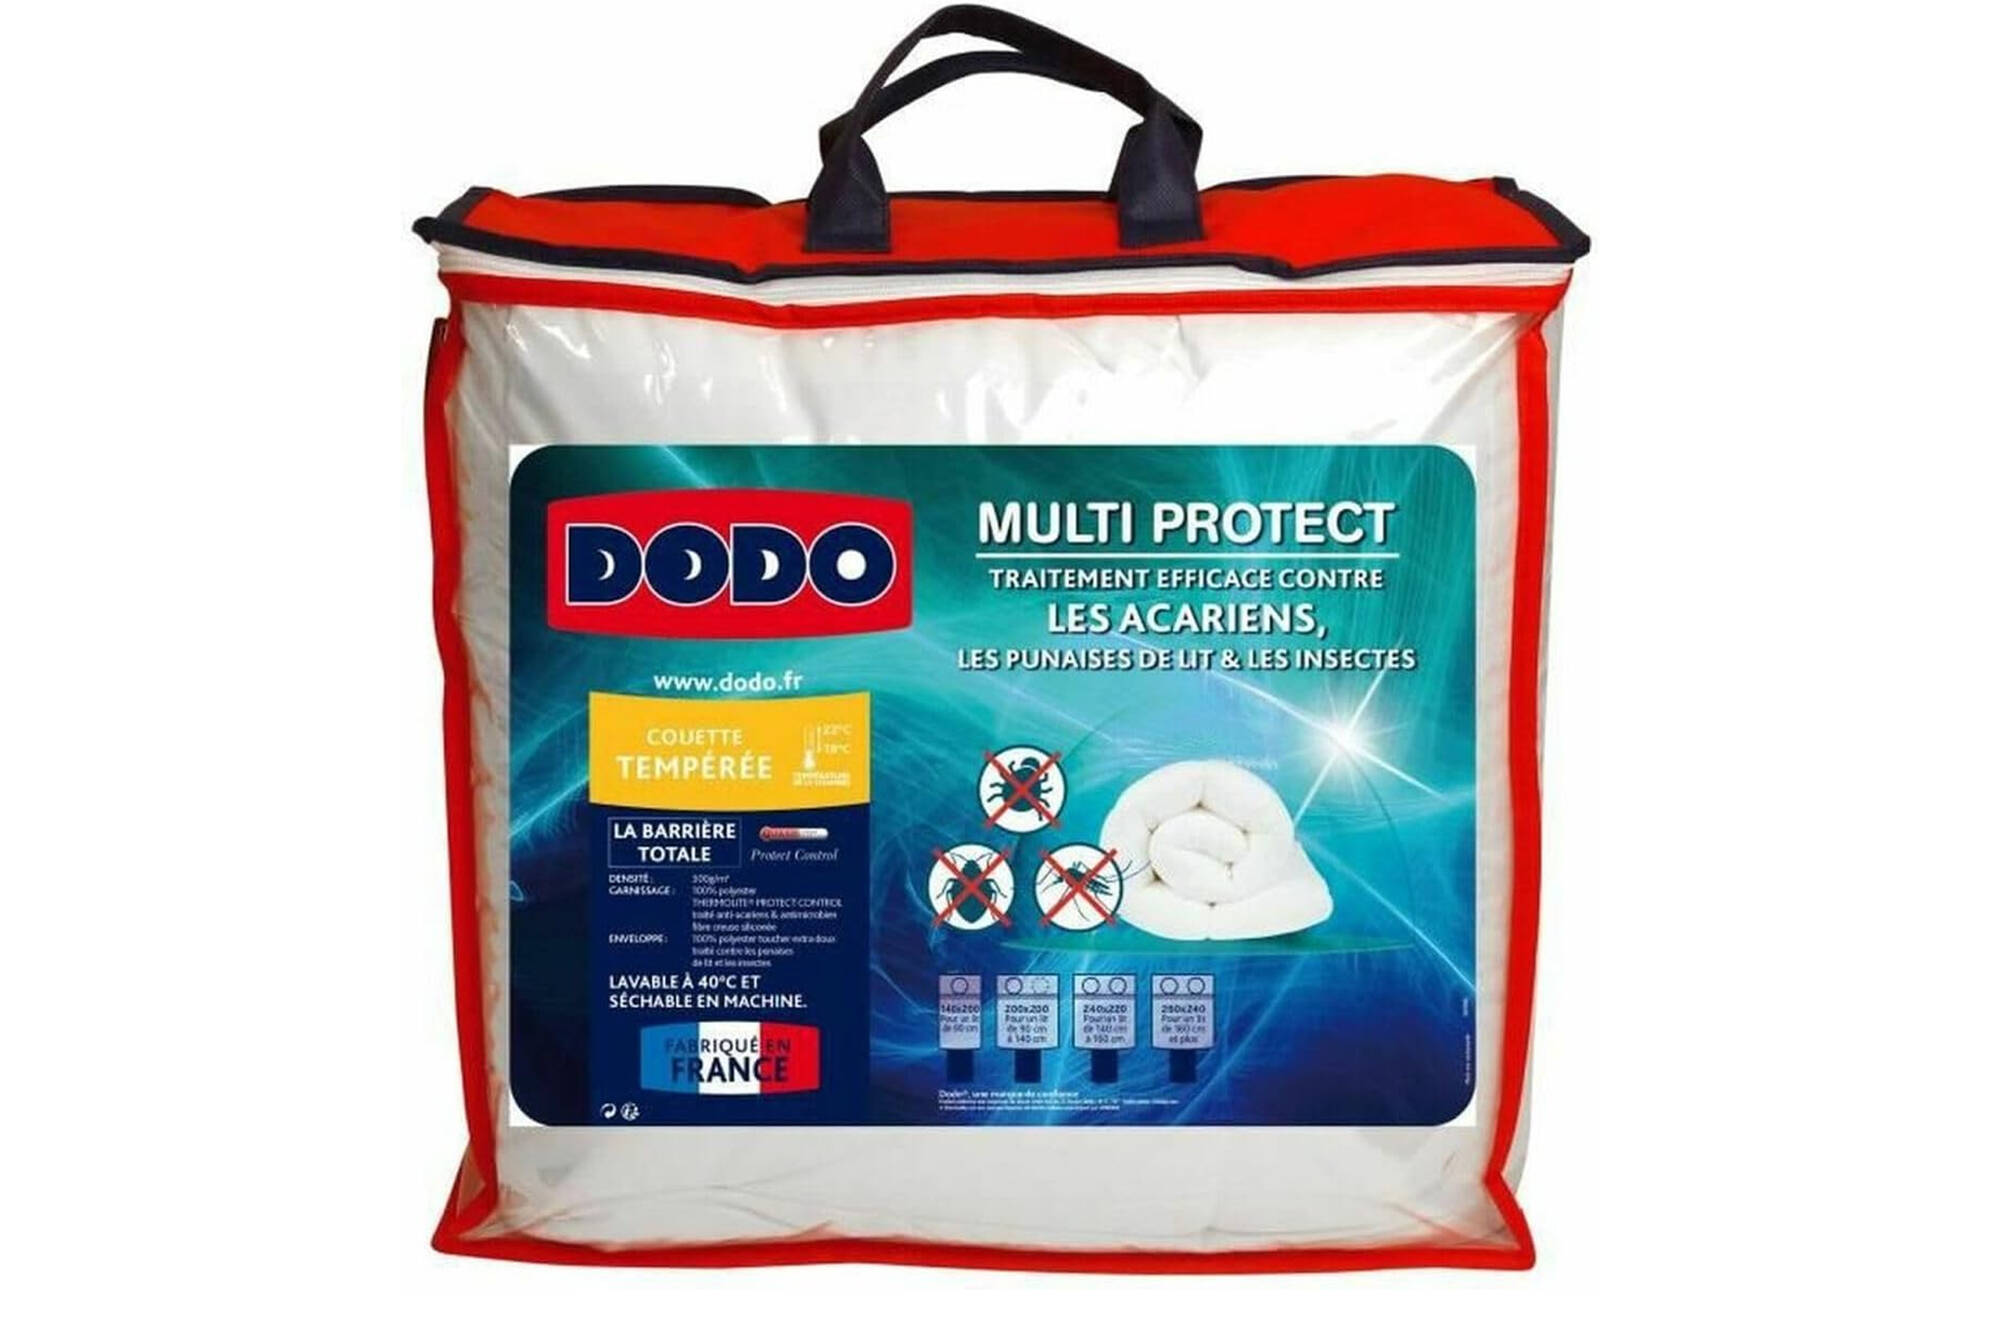 DODO Antiallergische weiße Bettdecke 140x220cm